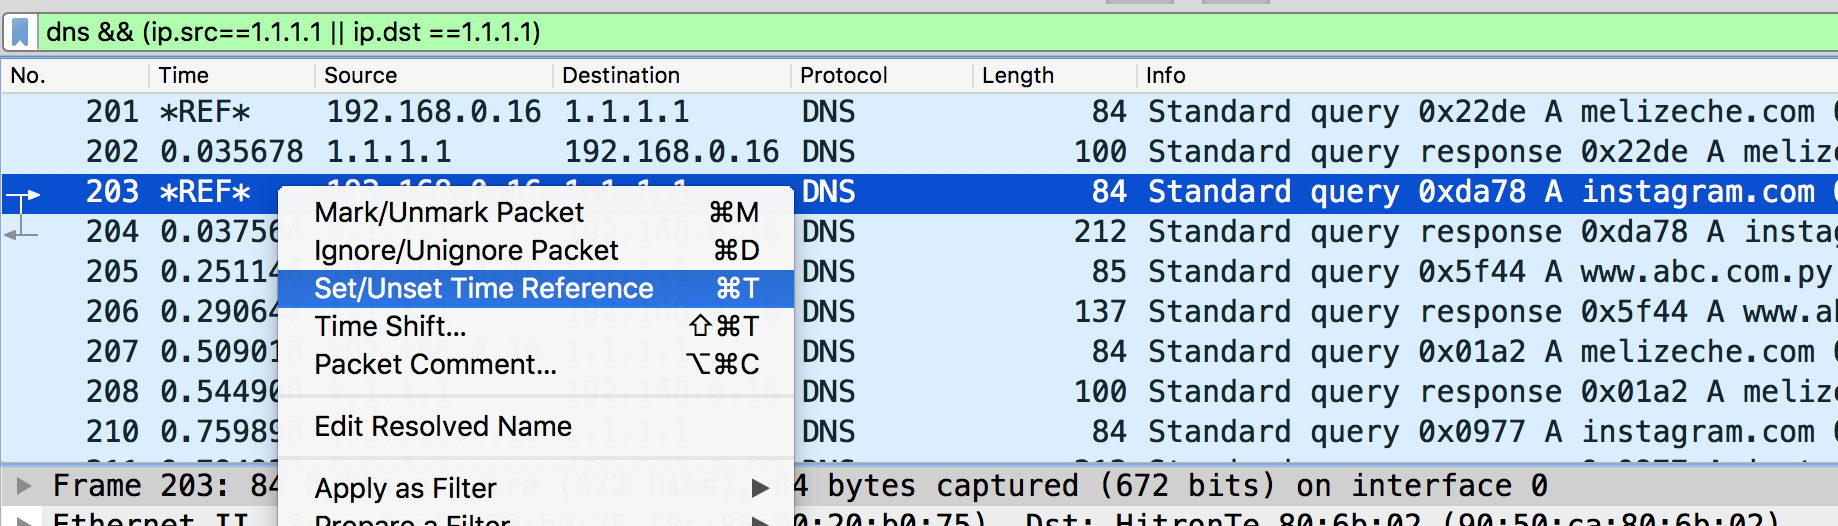 ¿Qué tan rápido es el DNS que usas? Comparativa de rendimiento de DNS